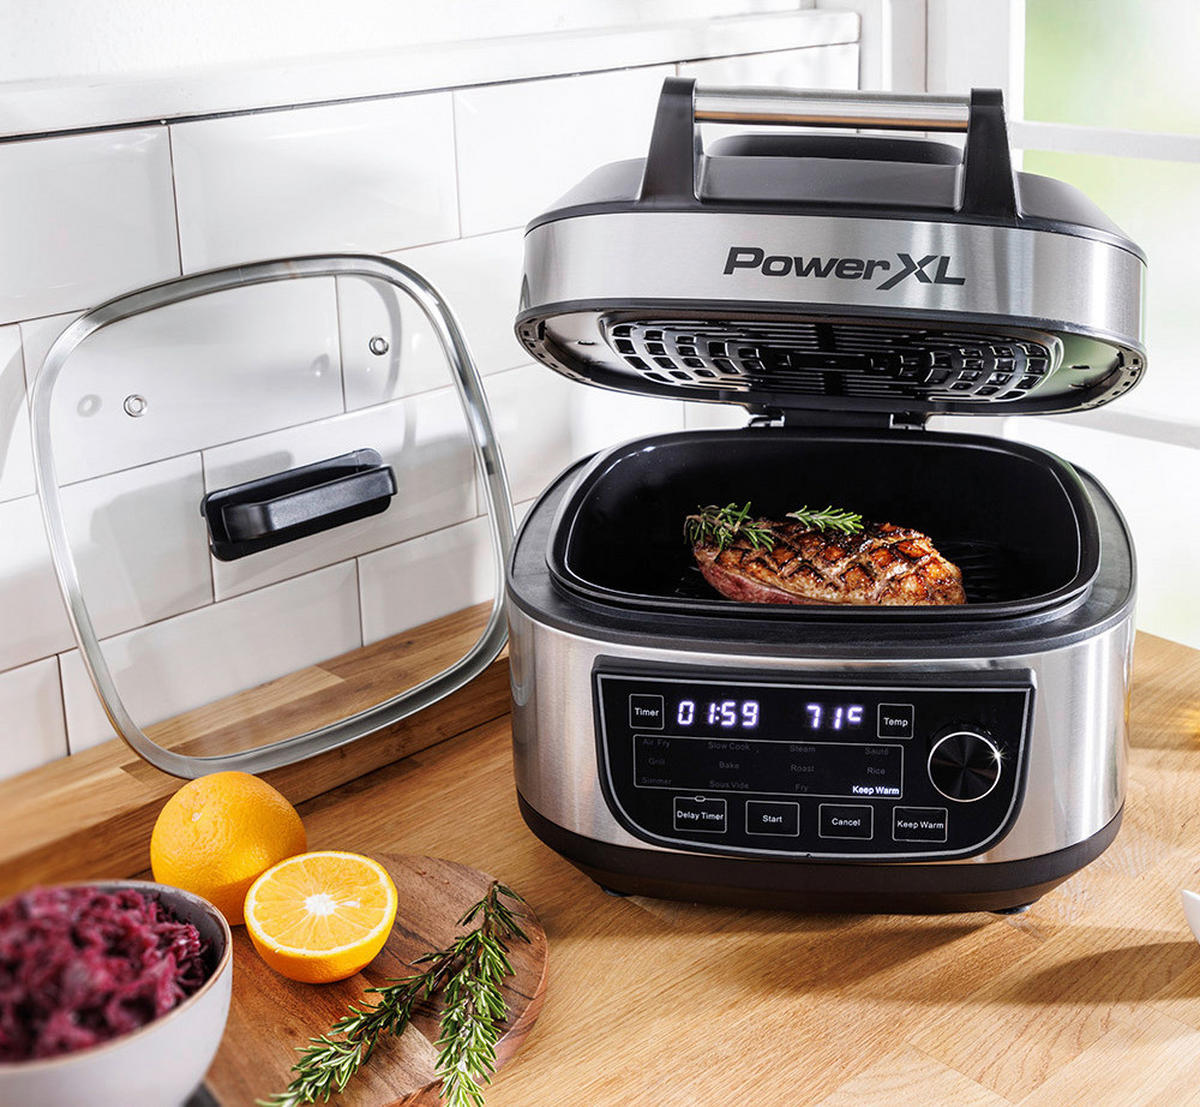 Mediashop Multi Cooker Power XL 12-in-1 M25658 schwarz Edelstahl ca. 5,7 l  ▷ online bei POCO kaufen | Küchenmaschinen